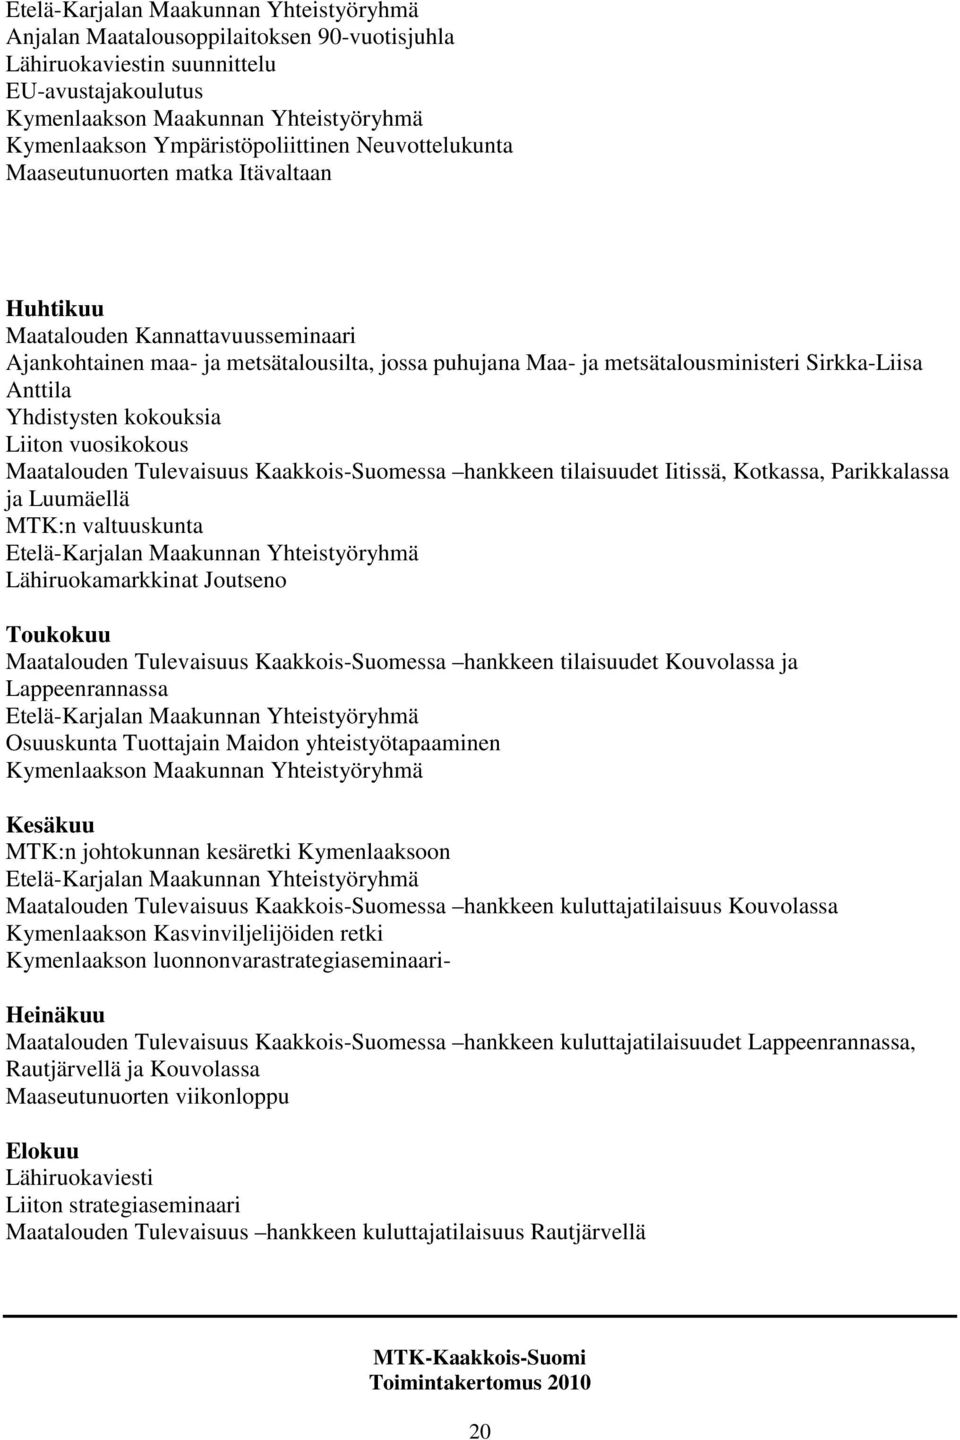 Sirkka-Liisa Anttila Yhdistysten kokouksia Liiton vuosikokous Maatalouden Tulevaisuus Kaakkois-Suomessa hankkeen tilaisuudet Iitissä, Kotkassa, Parikkalassa ja Luumäellä MTK:n valtuuskunta